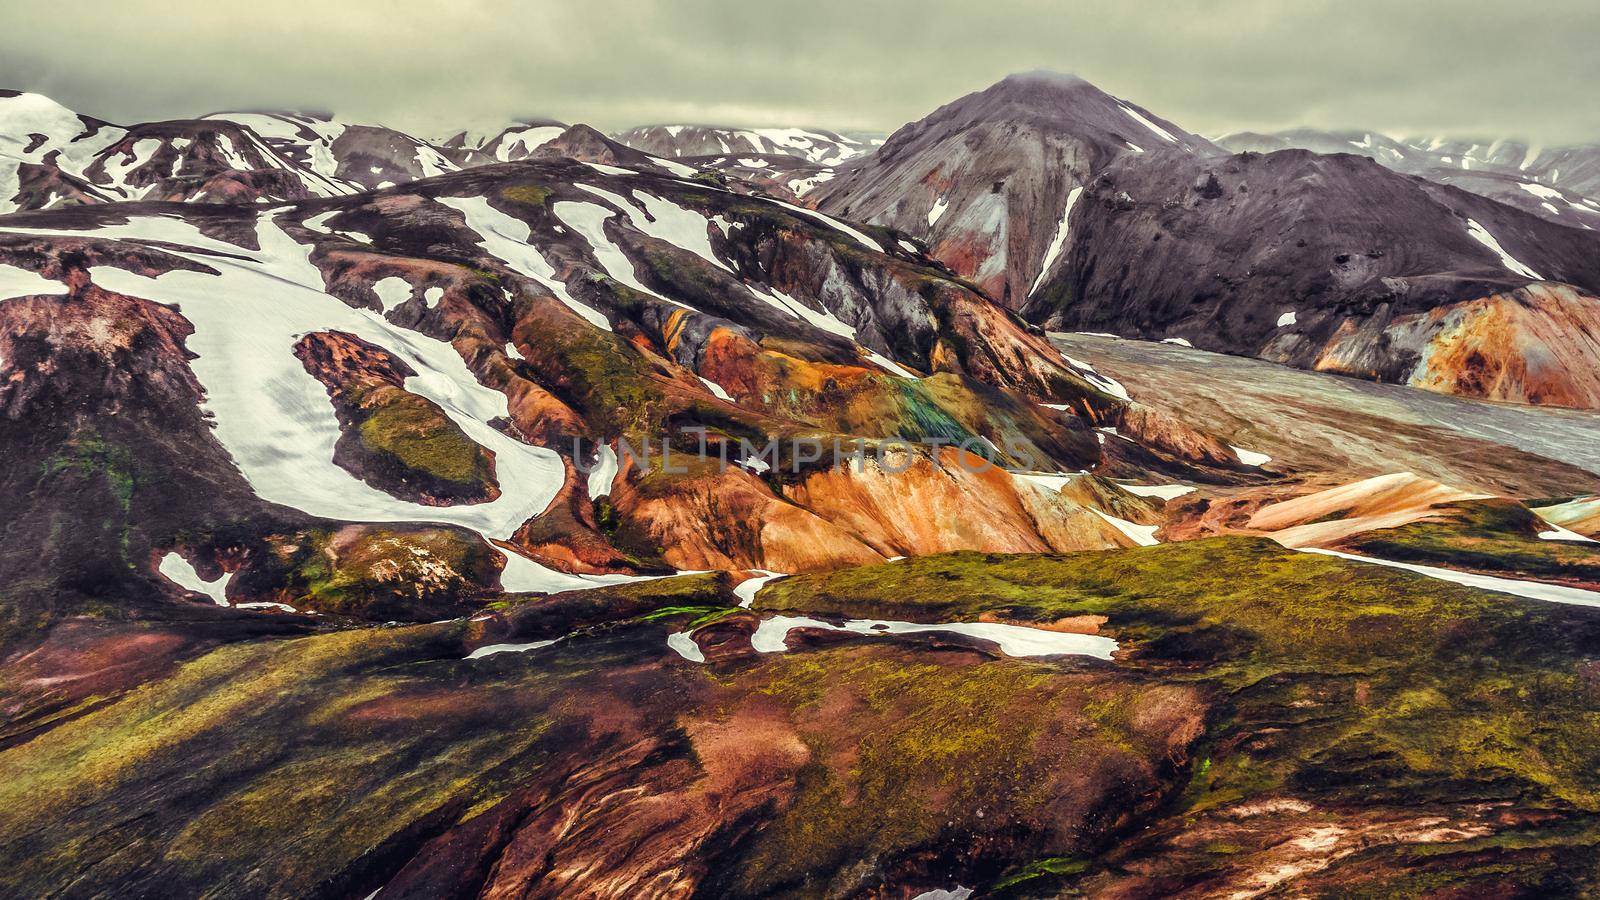 Landscape of Landmannalaugar Iceland Highland by biancoblue